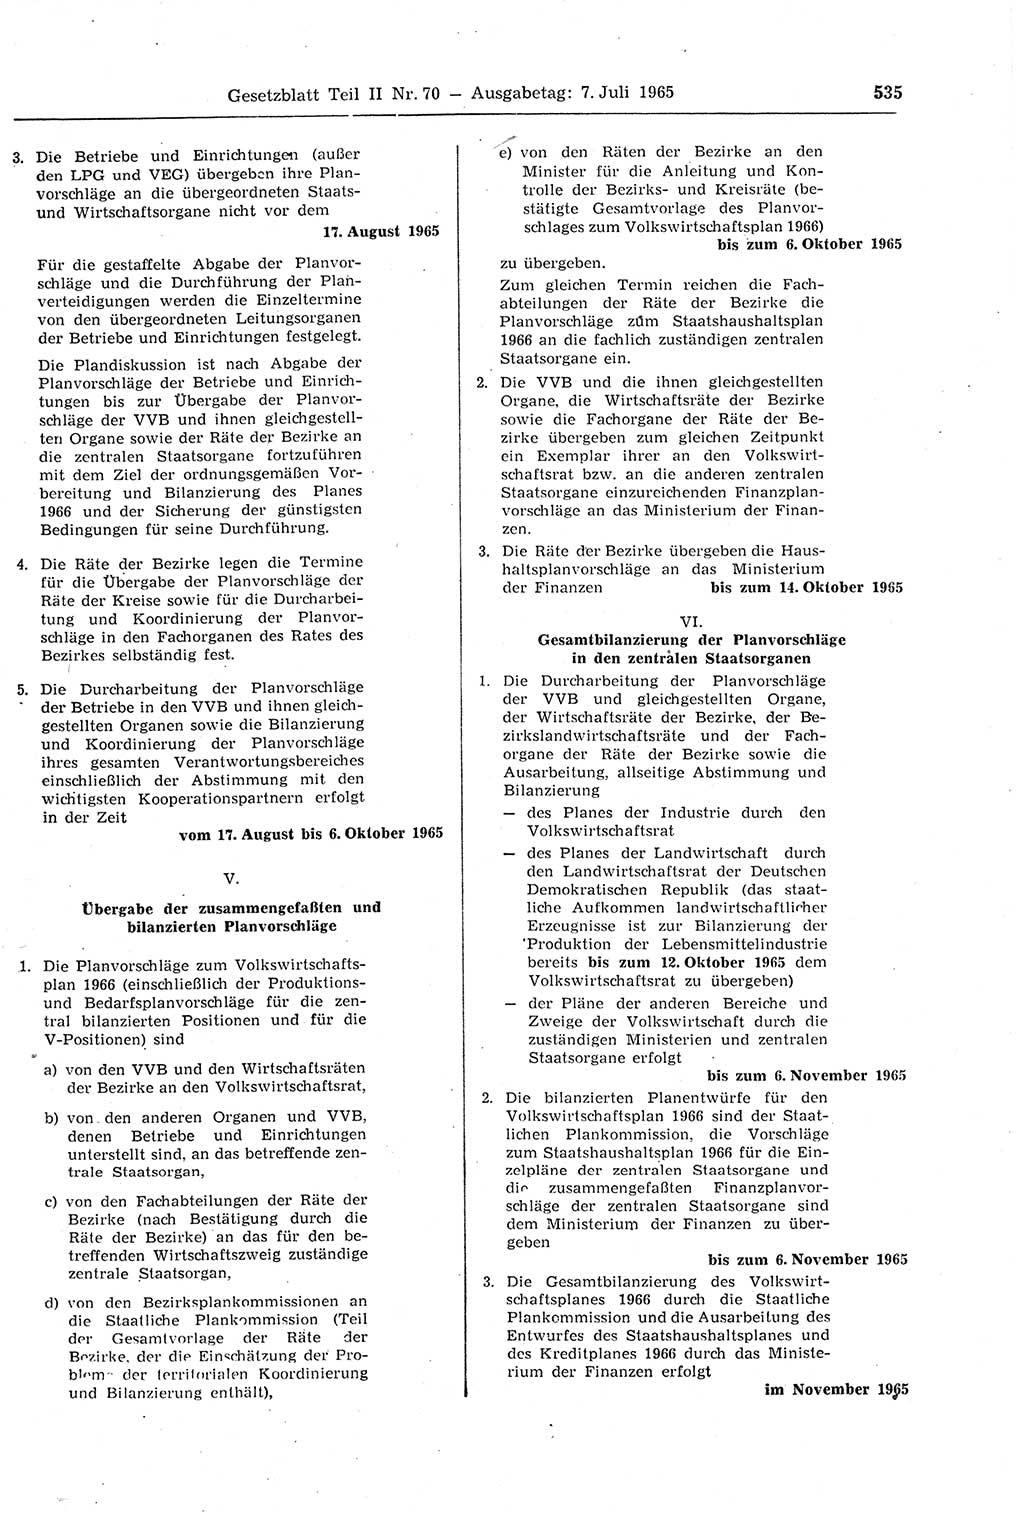 Gesetzblatt (GBl.) der Deutschen Demokratischen Republik (DDR) Teil ⅠⅠ 1965, Seite 535 (GBl. DDR ⅠⅠ 1965, S. 535)